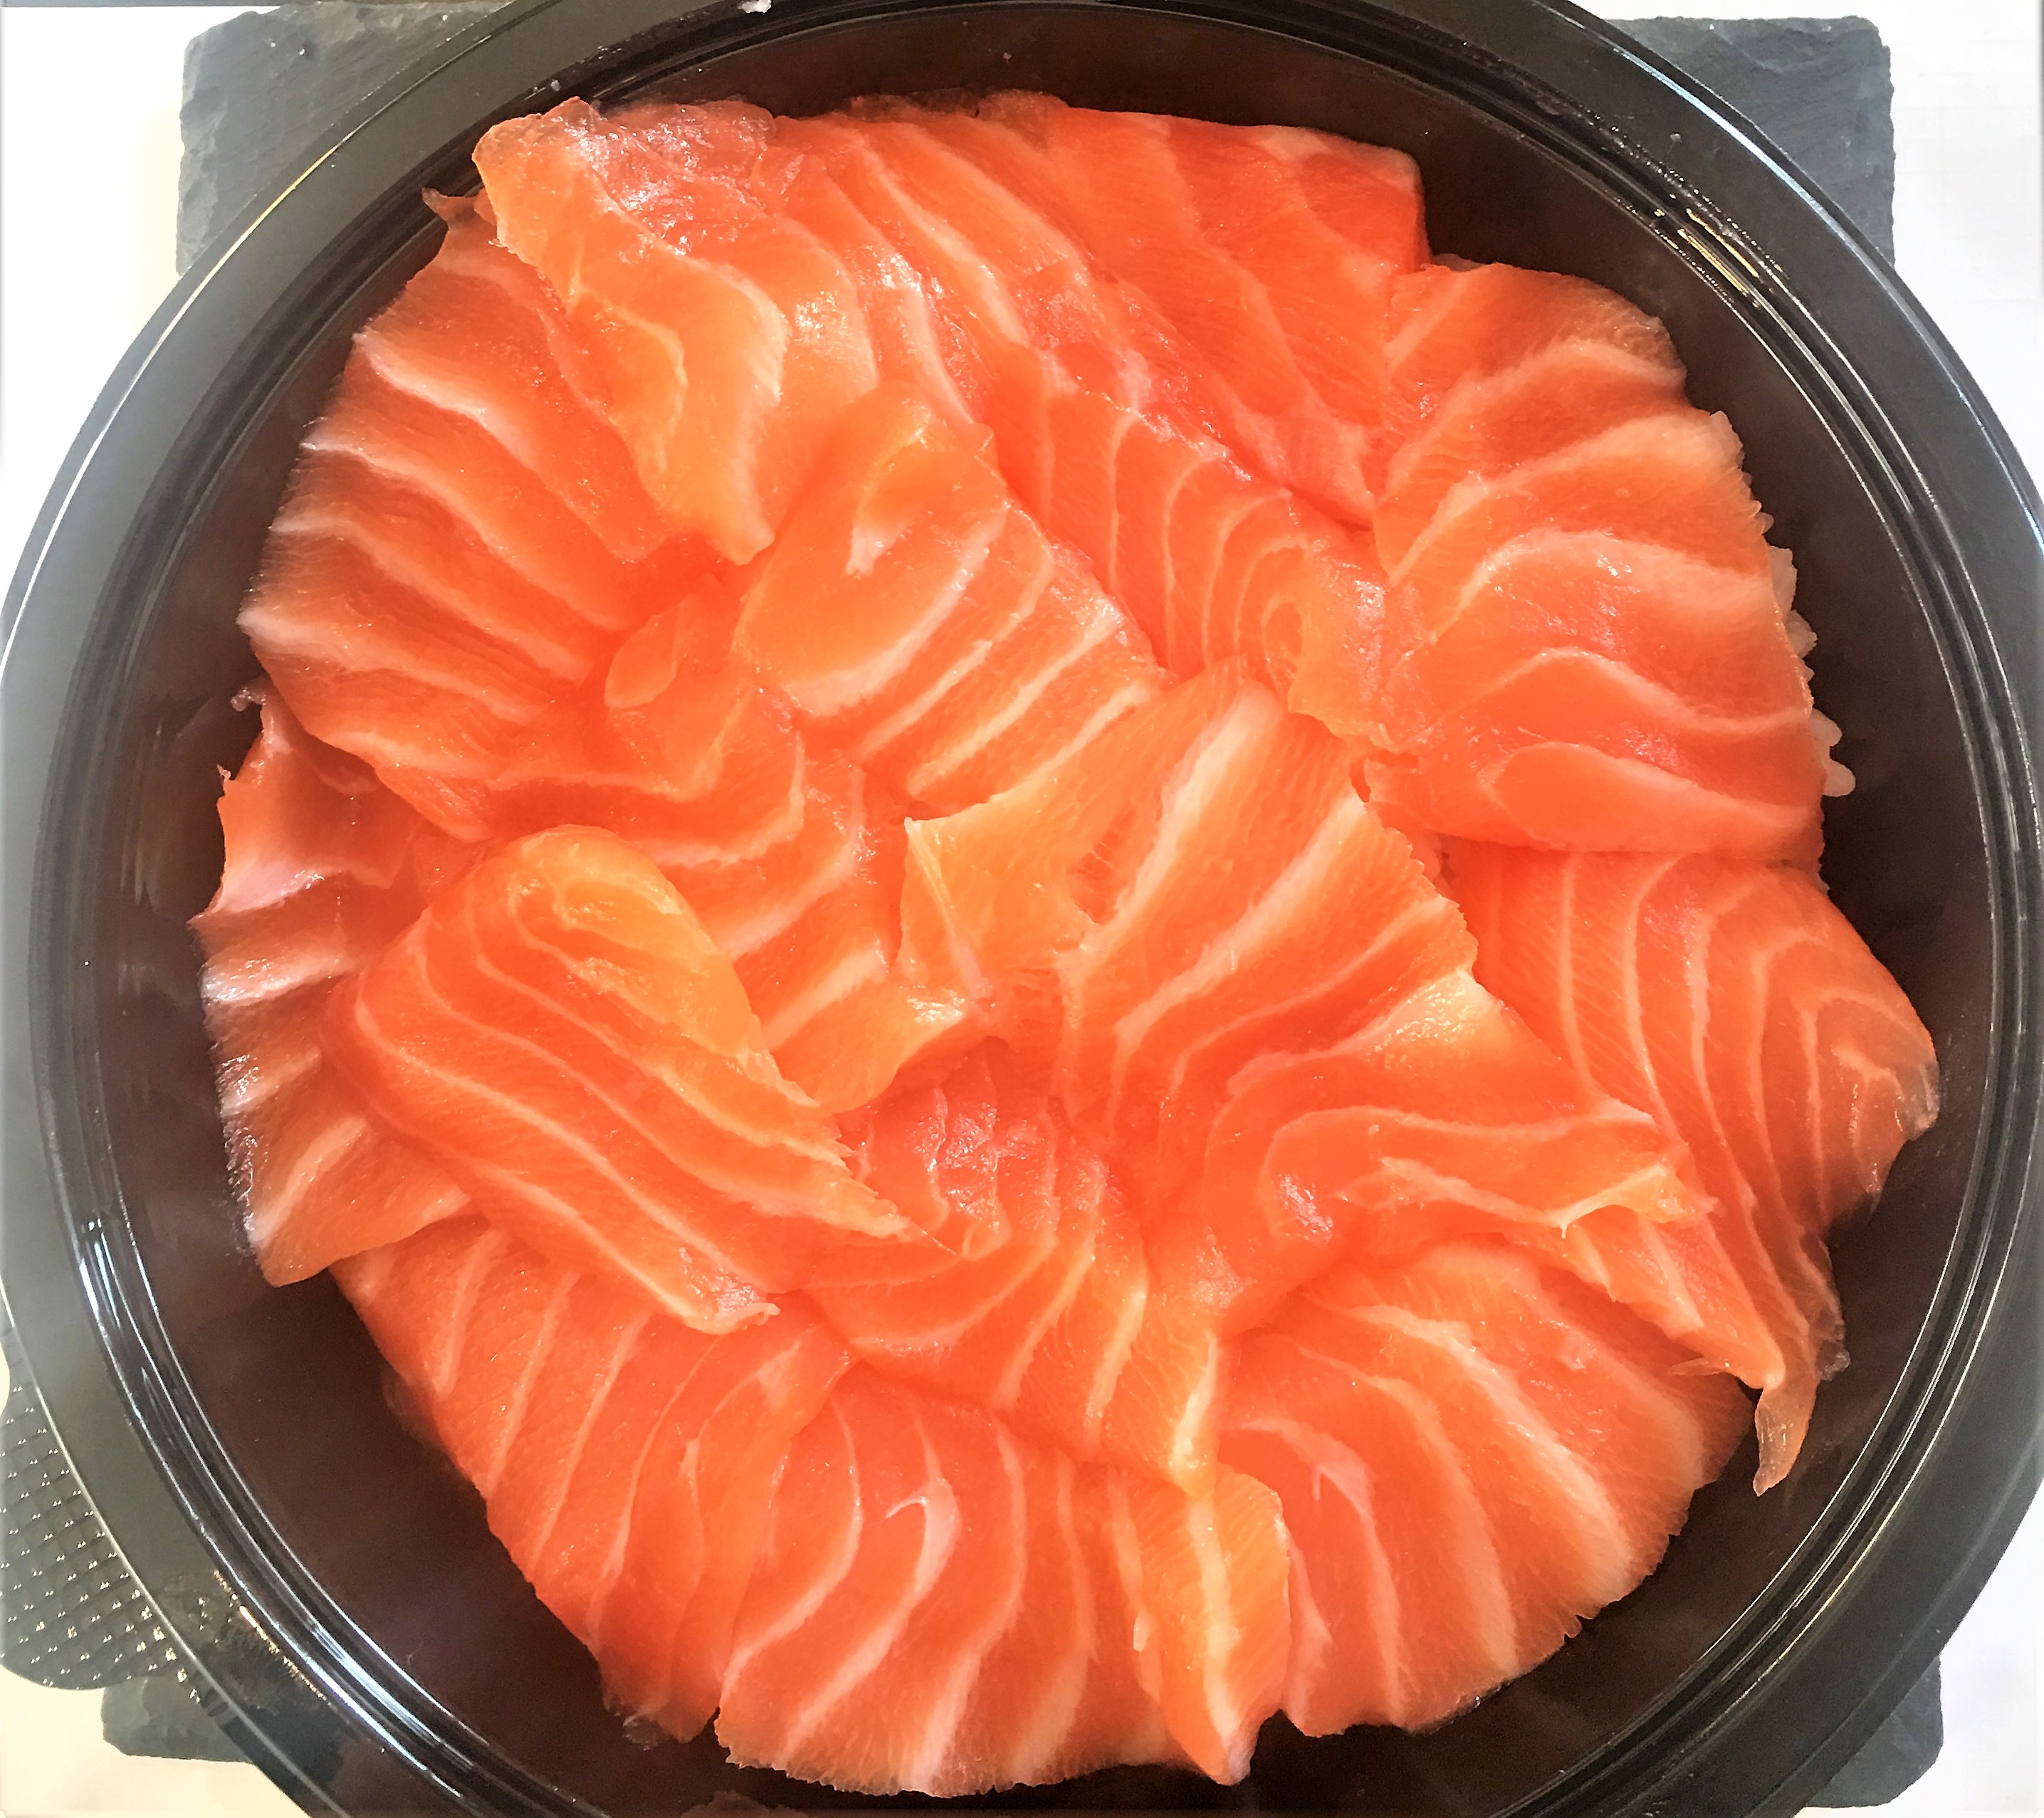 chirashi saumon